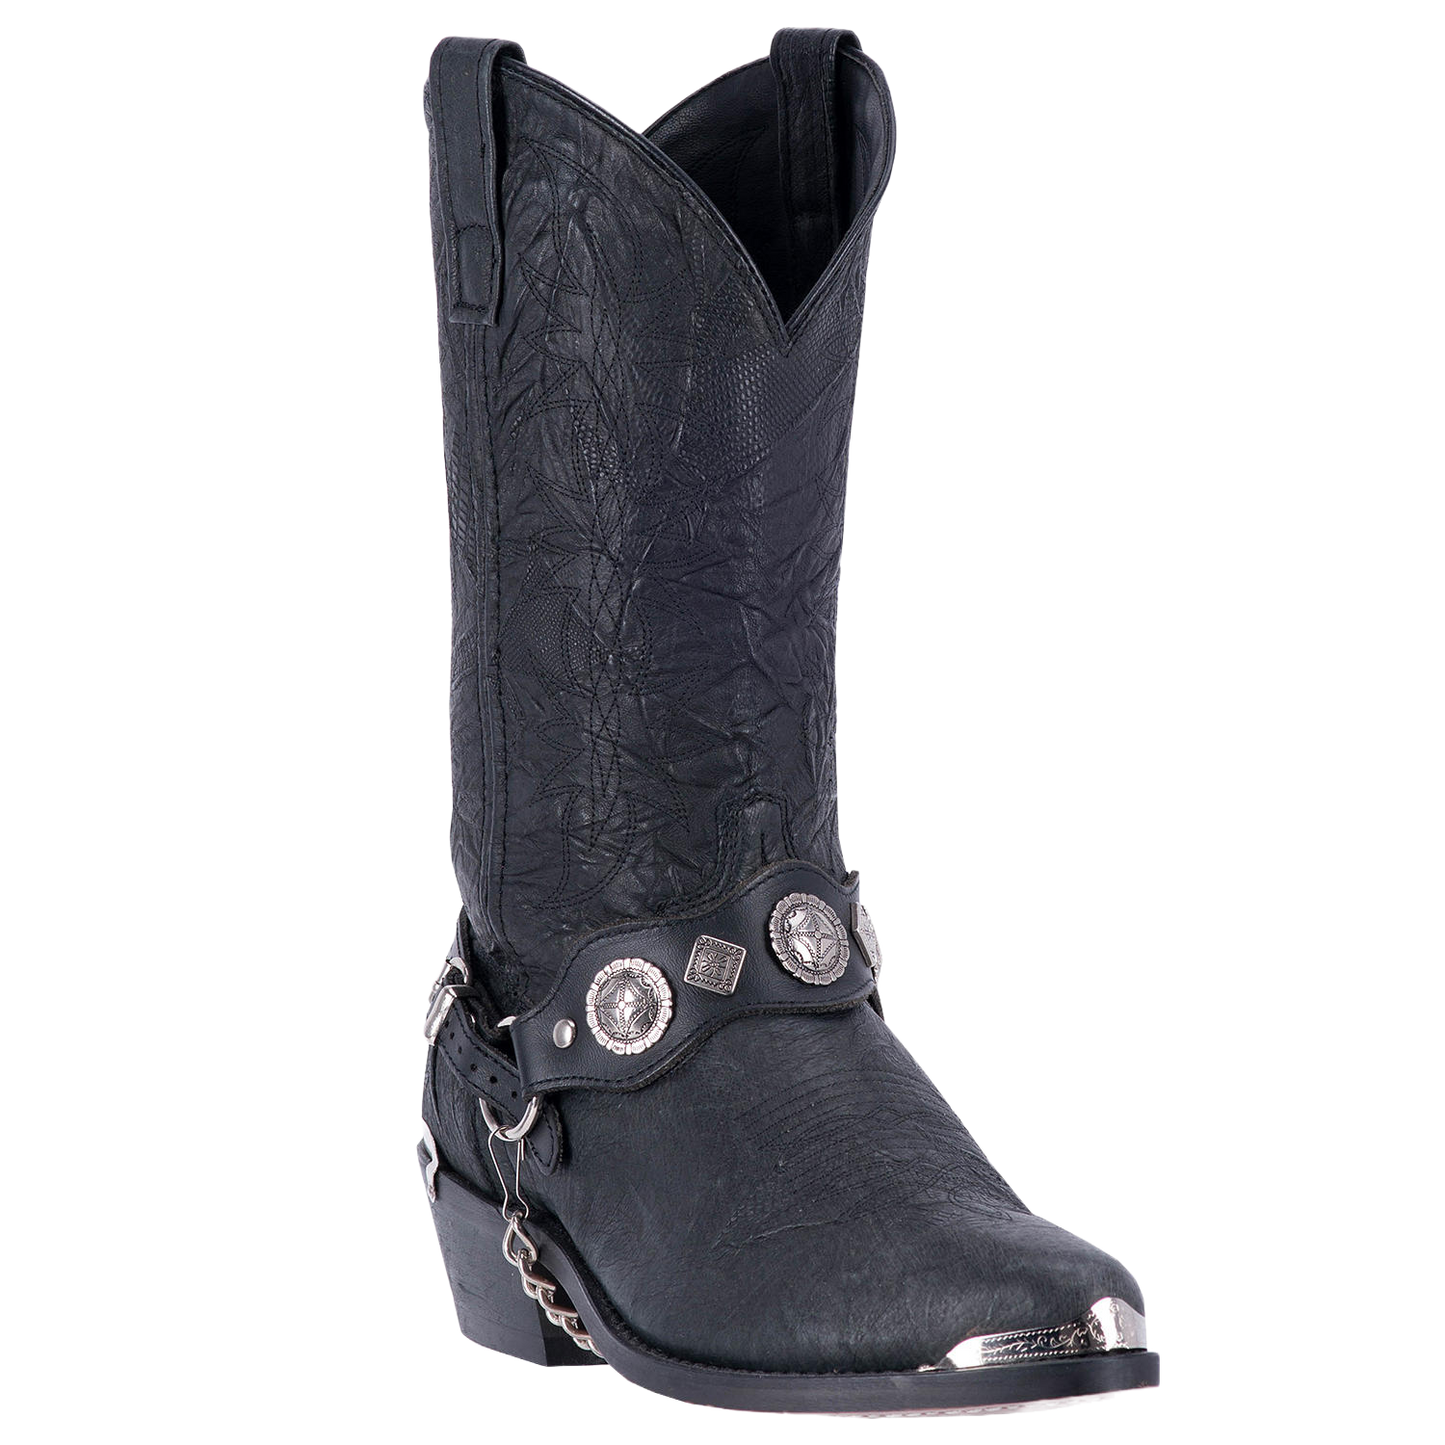 Dan Post Men's Stanley Leather Square Toe Boots - Black 8 / D